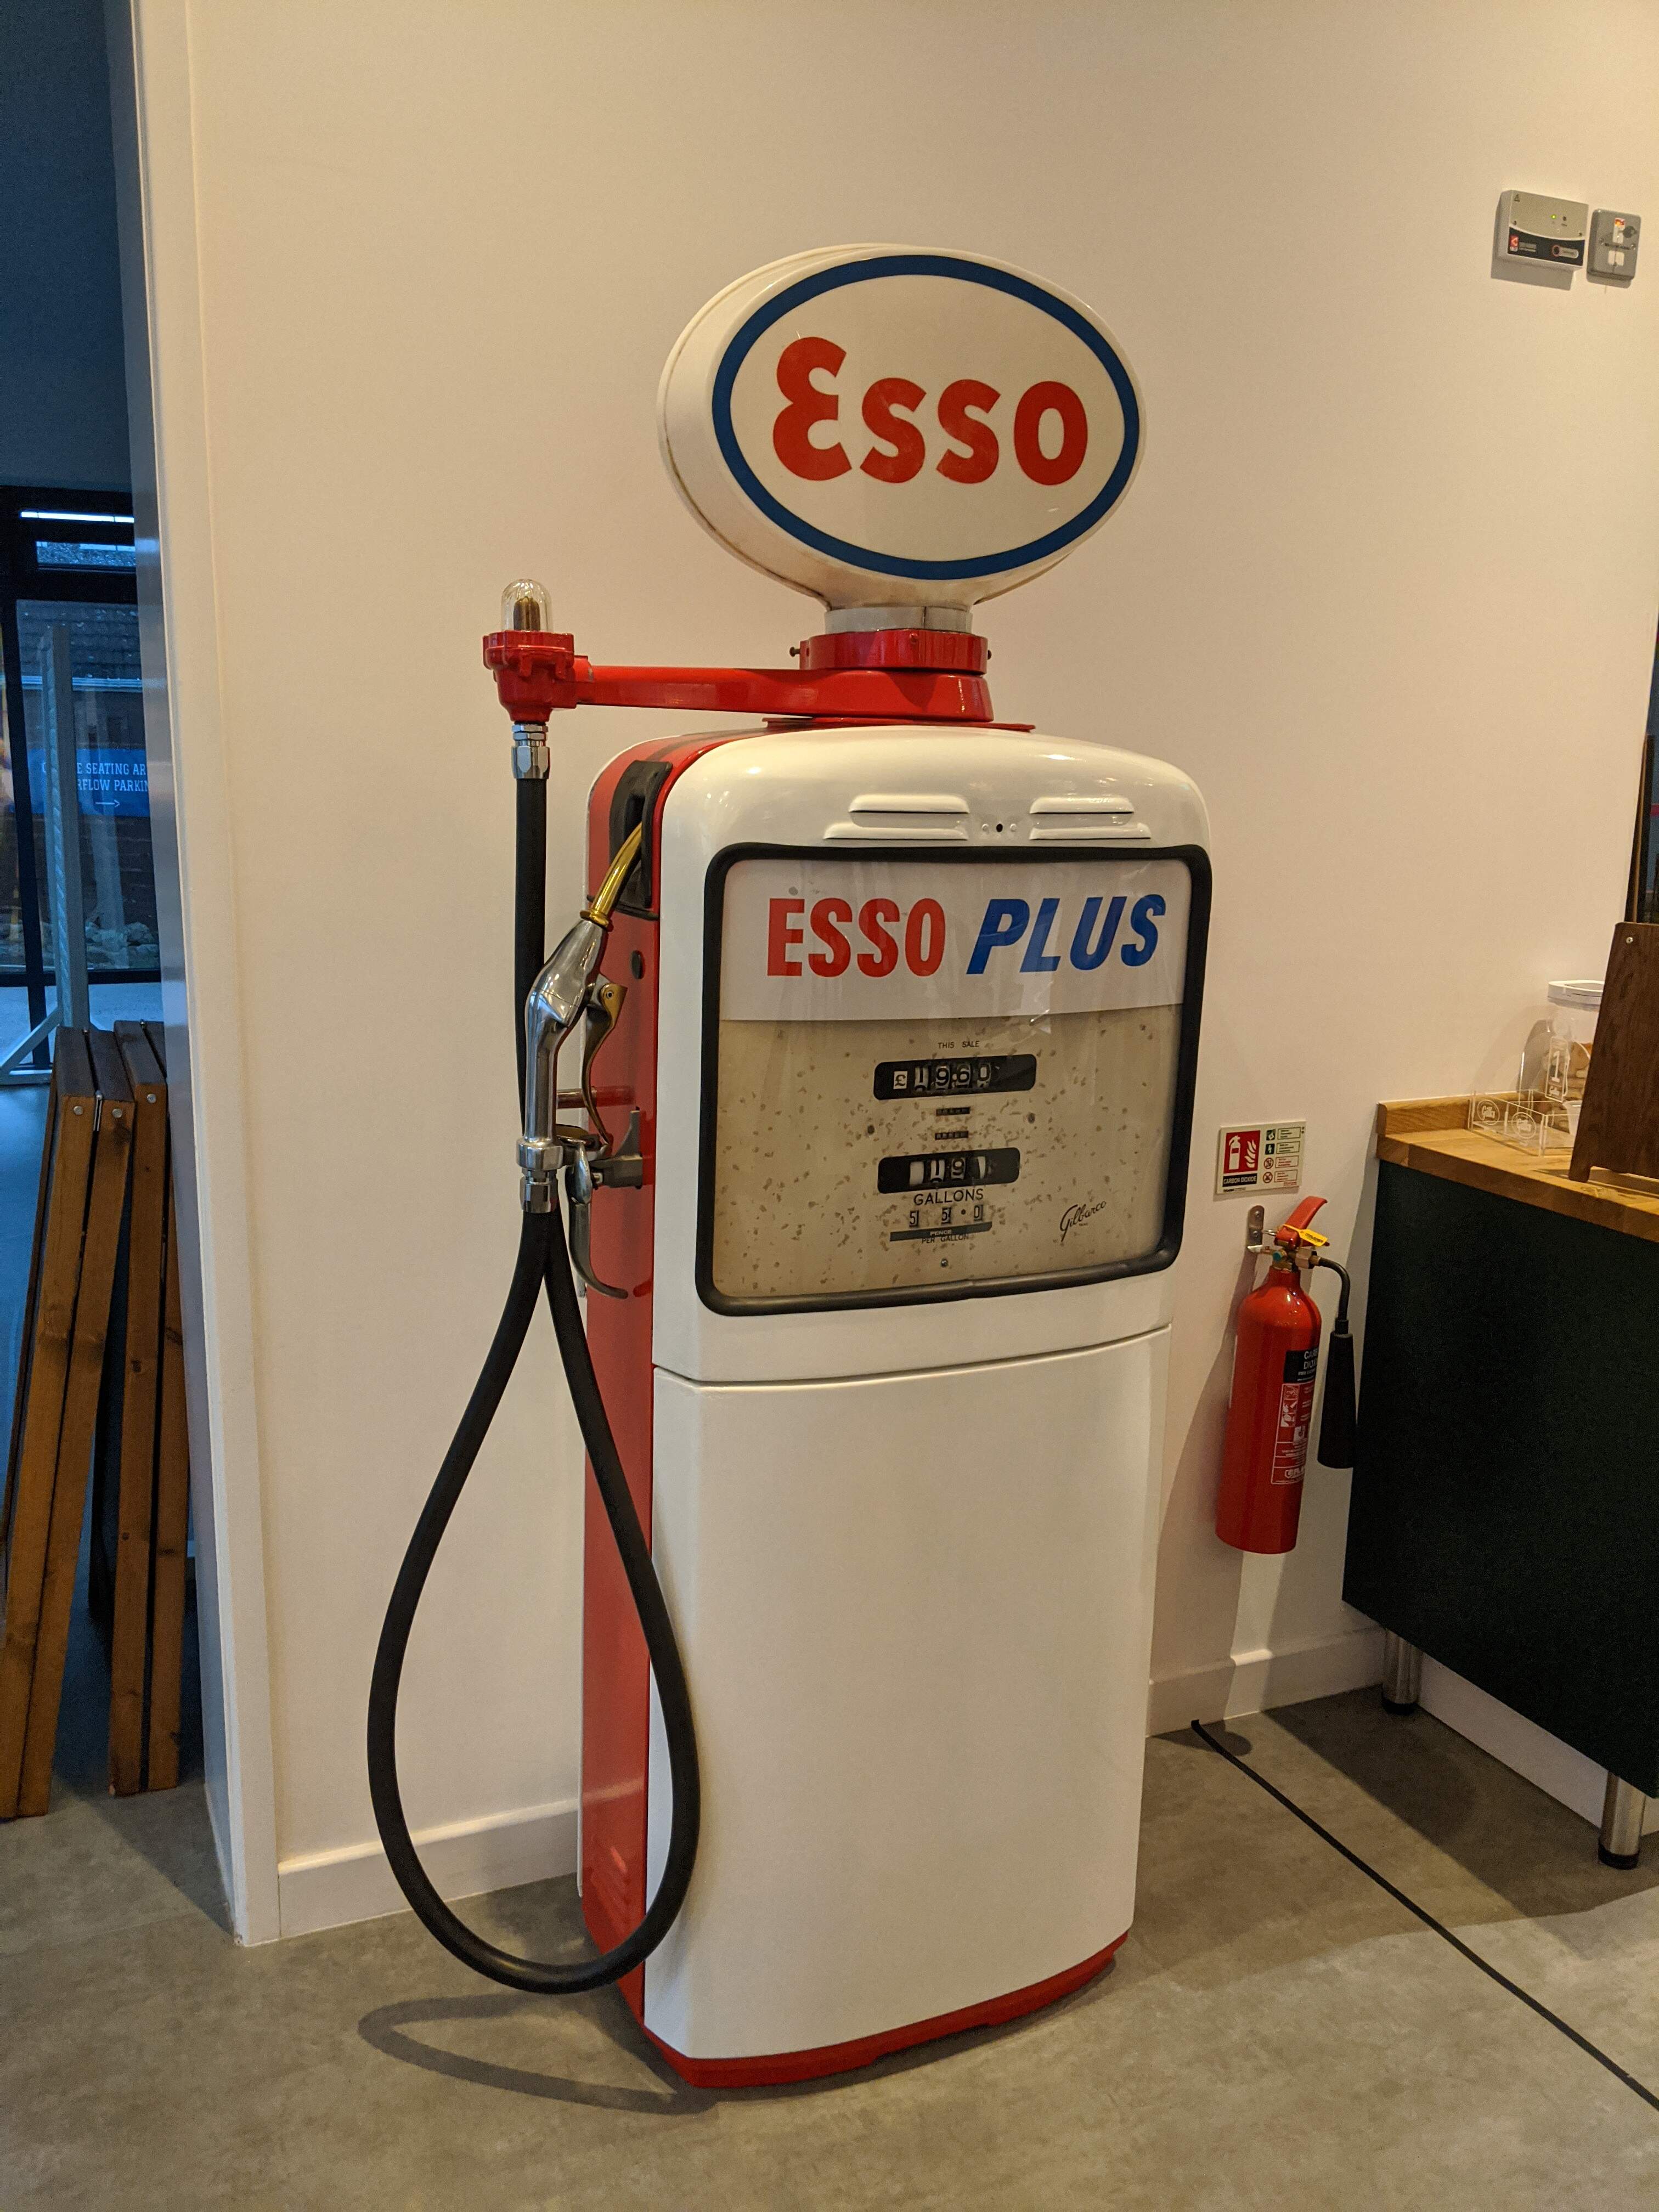 The original Esso Filling Station